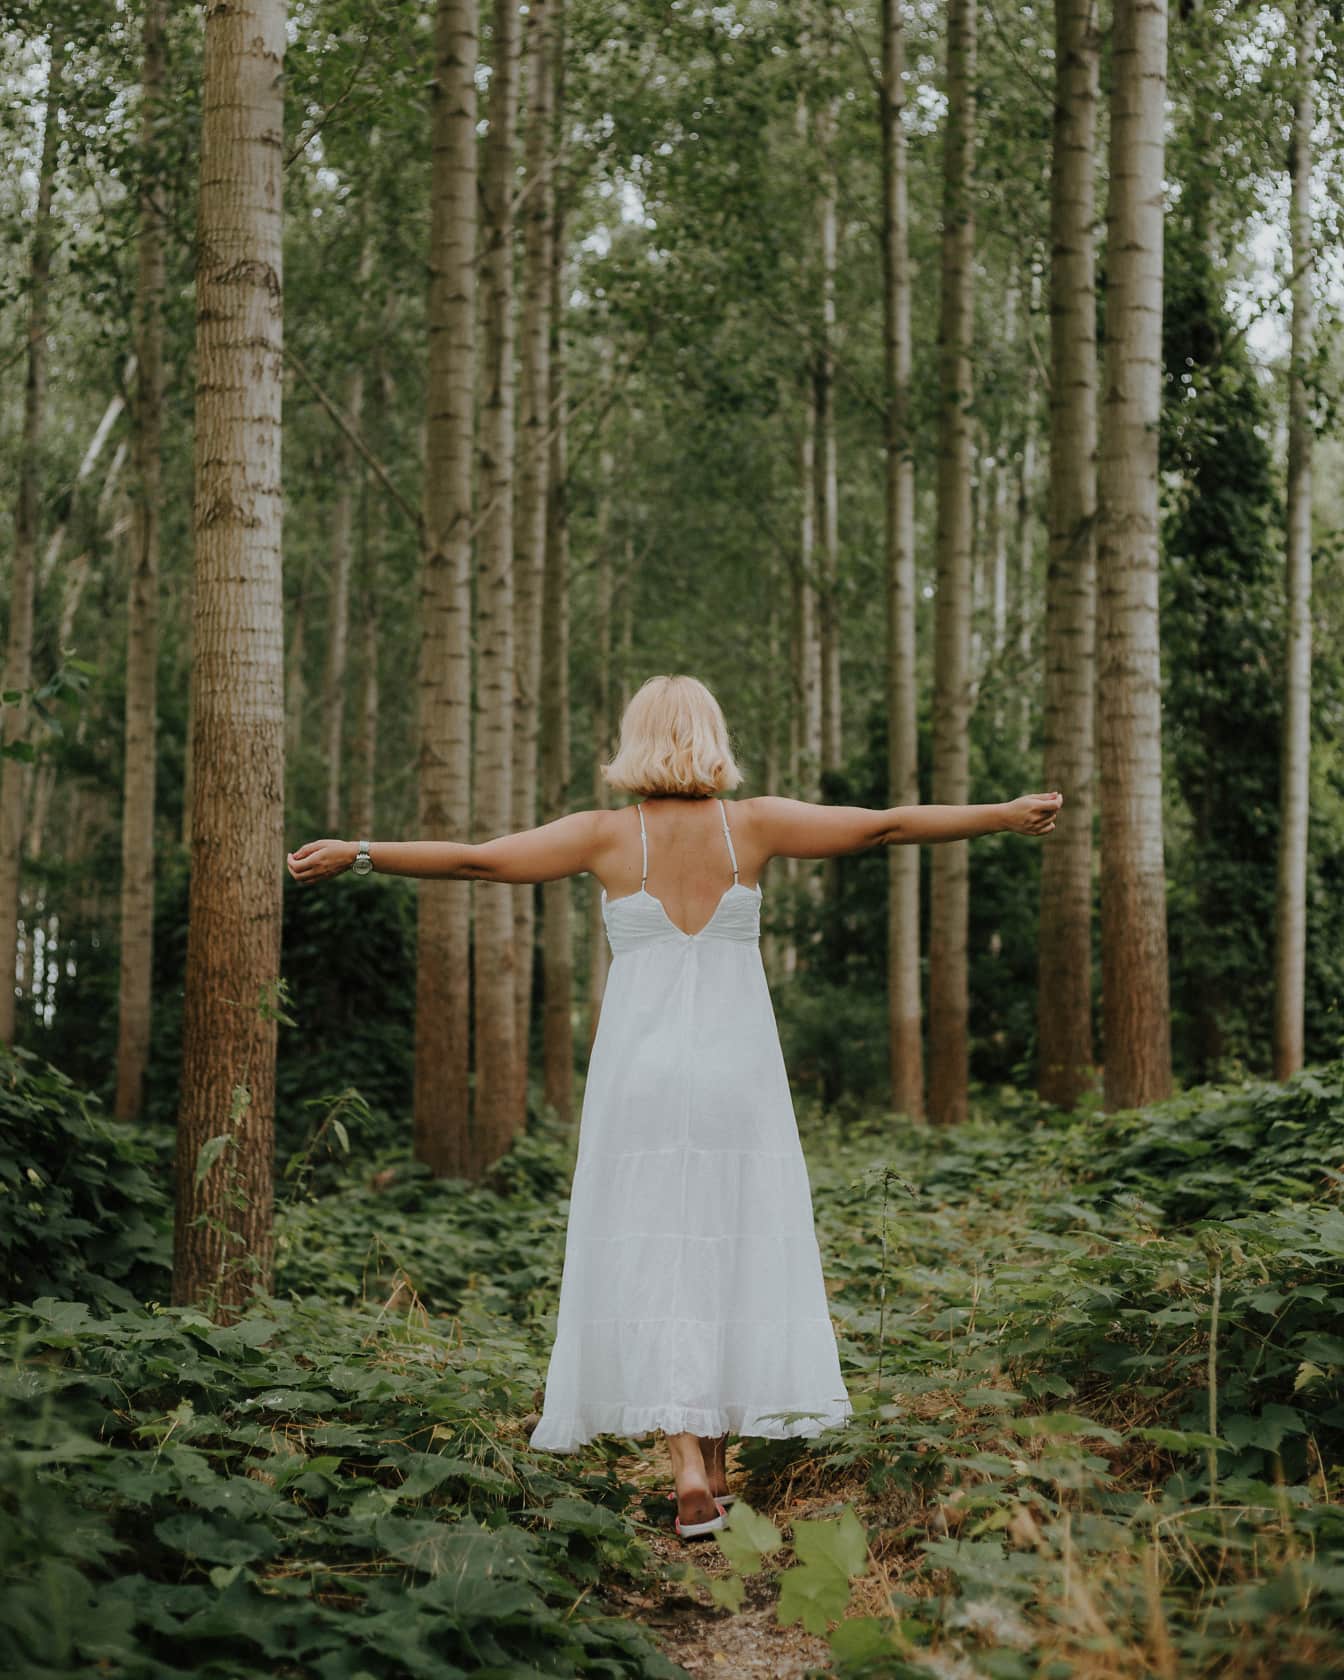 Блондинка, що стоїть у лісі в чисто білій сукні